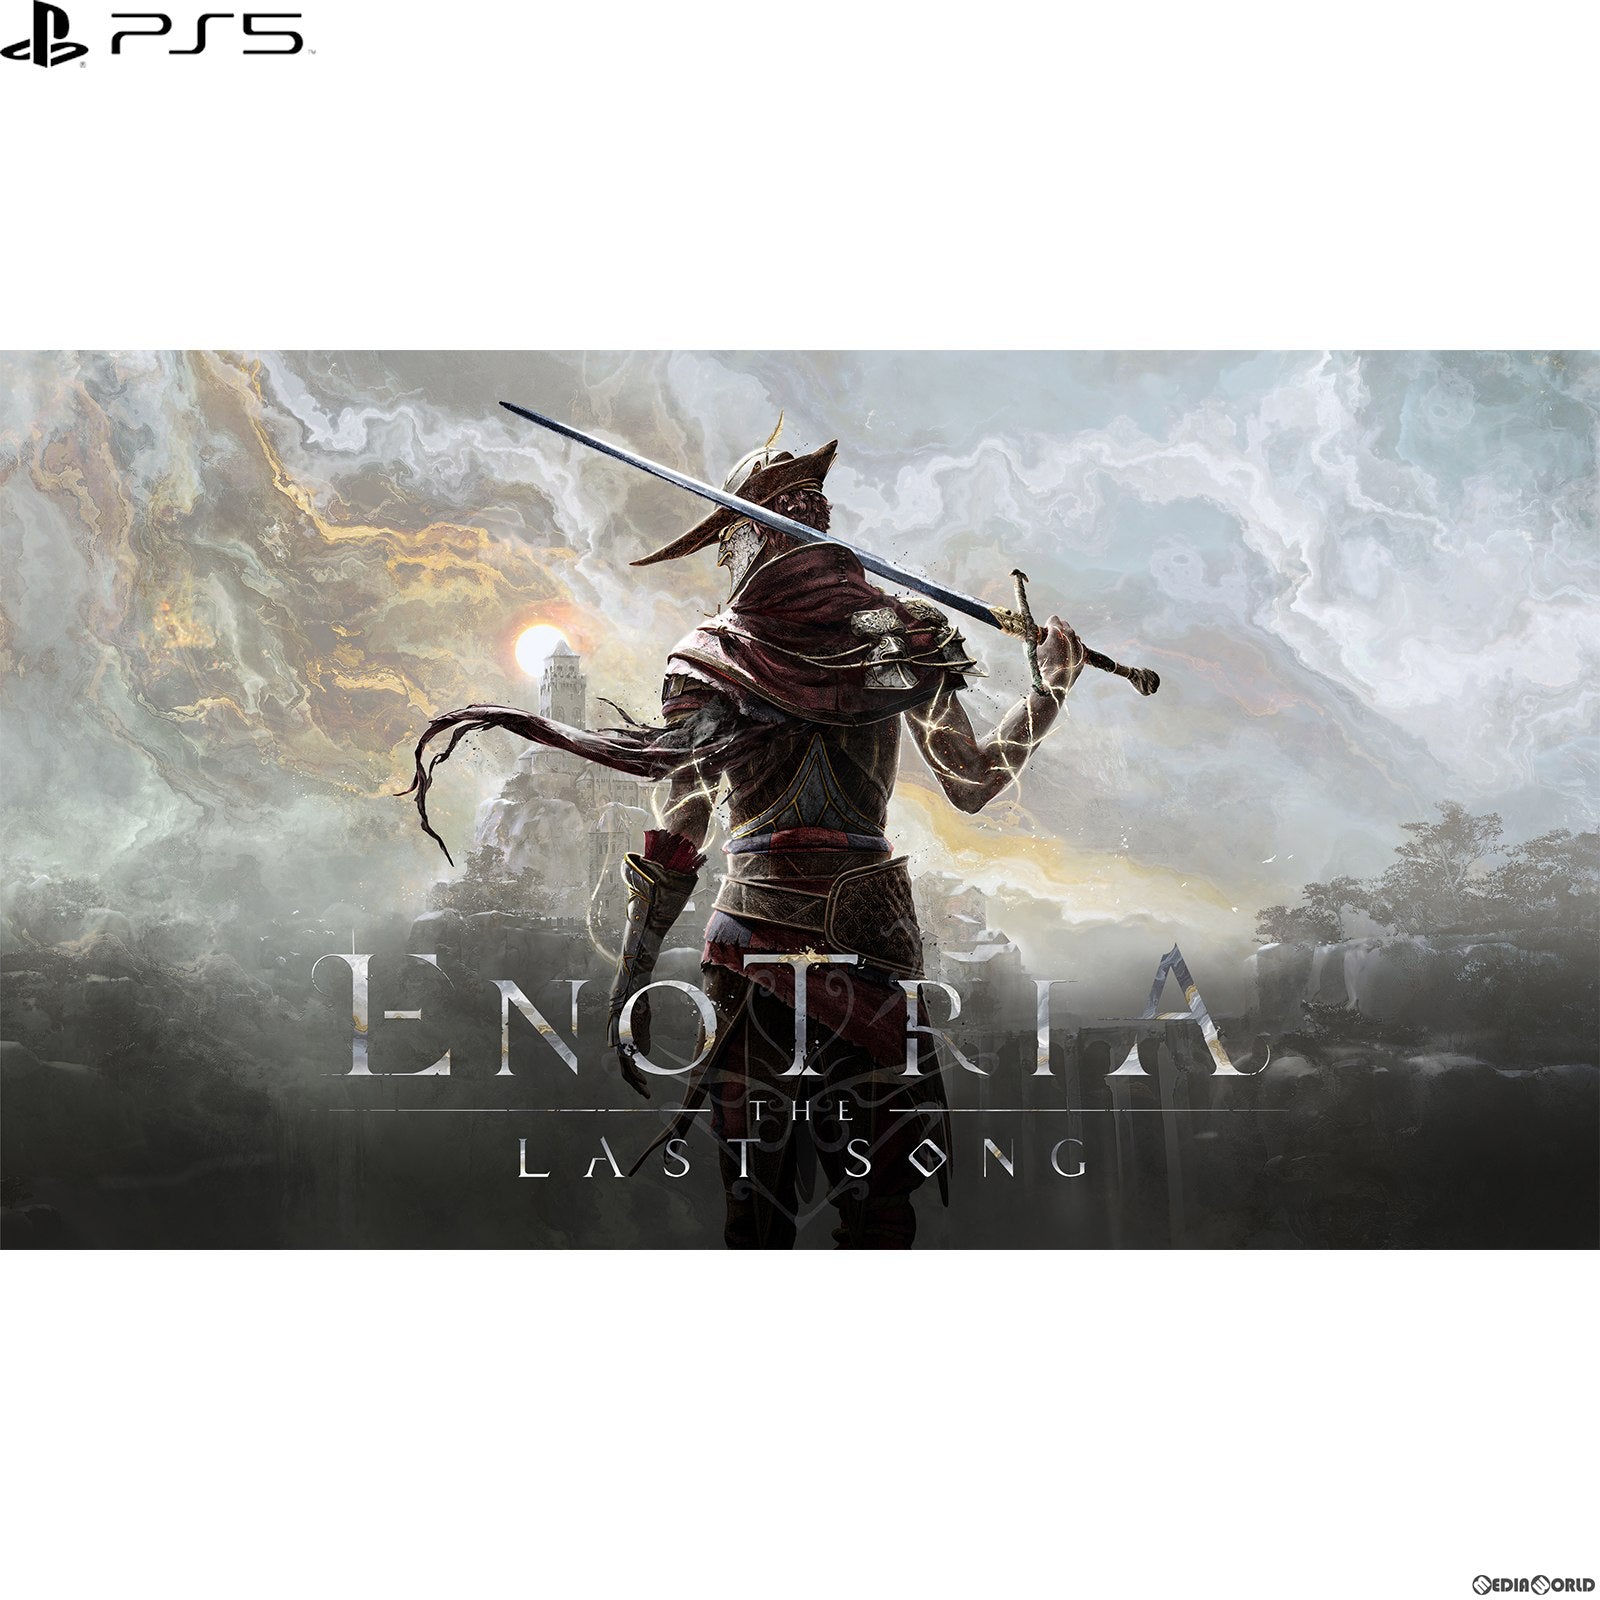 【予約前日出荷】[PS5]予約特典付(武器アップグレード素材＆オリジナルサウンドトラック) Enotria: The Last Song(エノトリア: ザ ラスト ソング) 通常版(20240822)